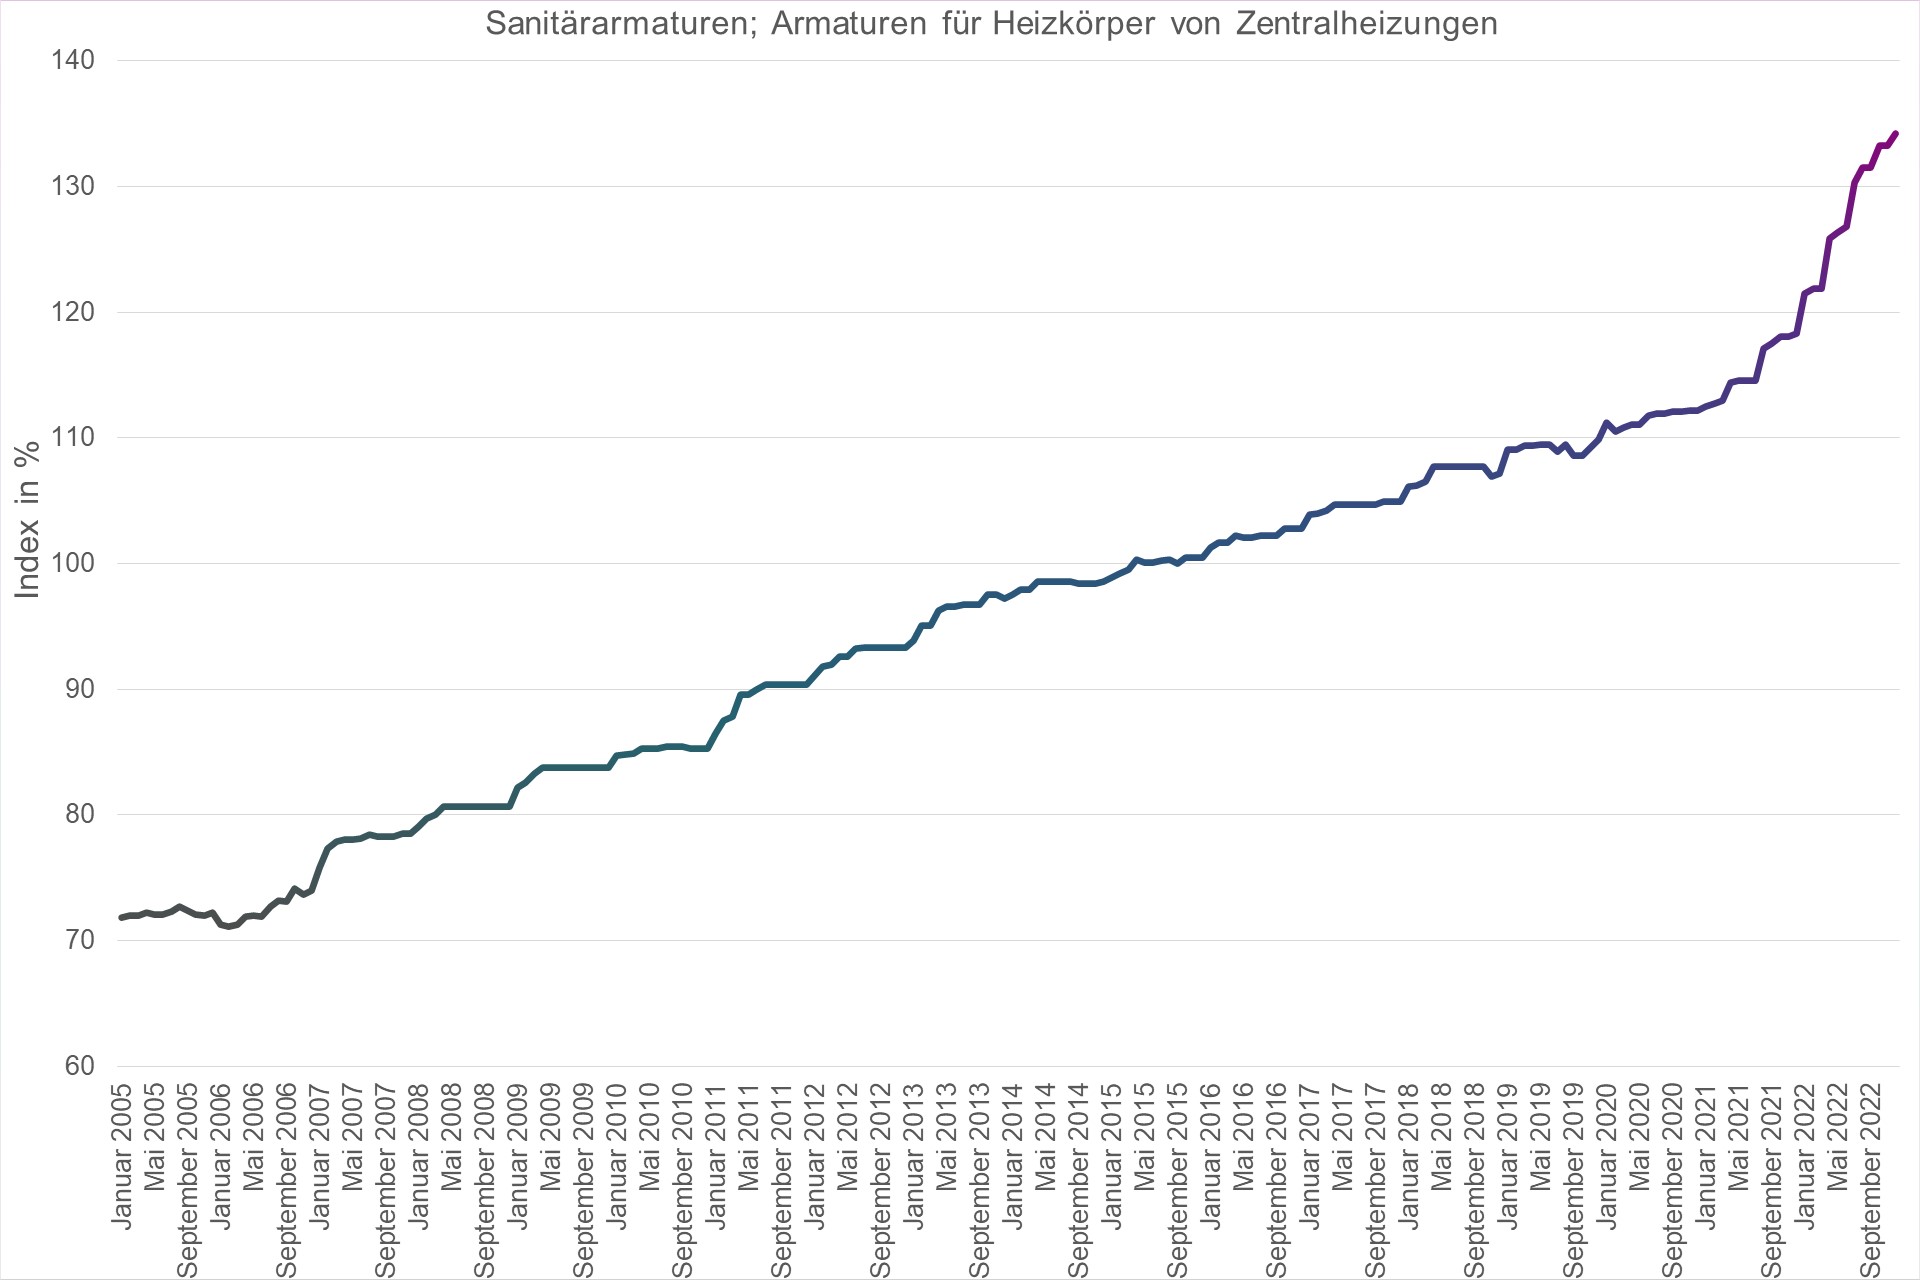 Grafik Preisindex Sanitärarmaturen; Armaturen für Heizkörper von Zentralheizungen